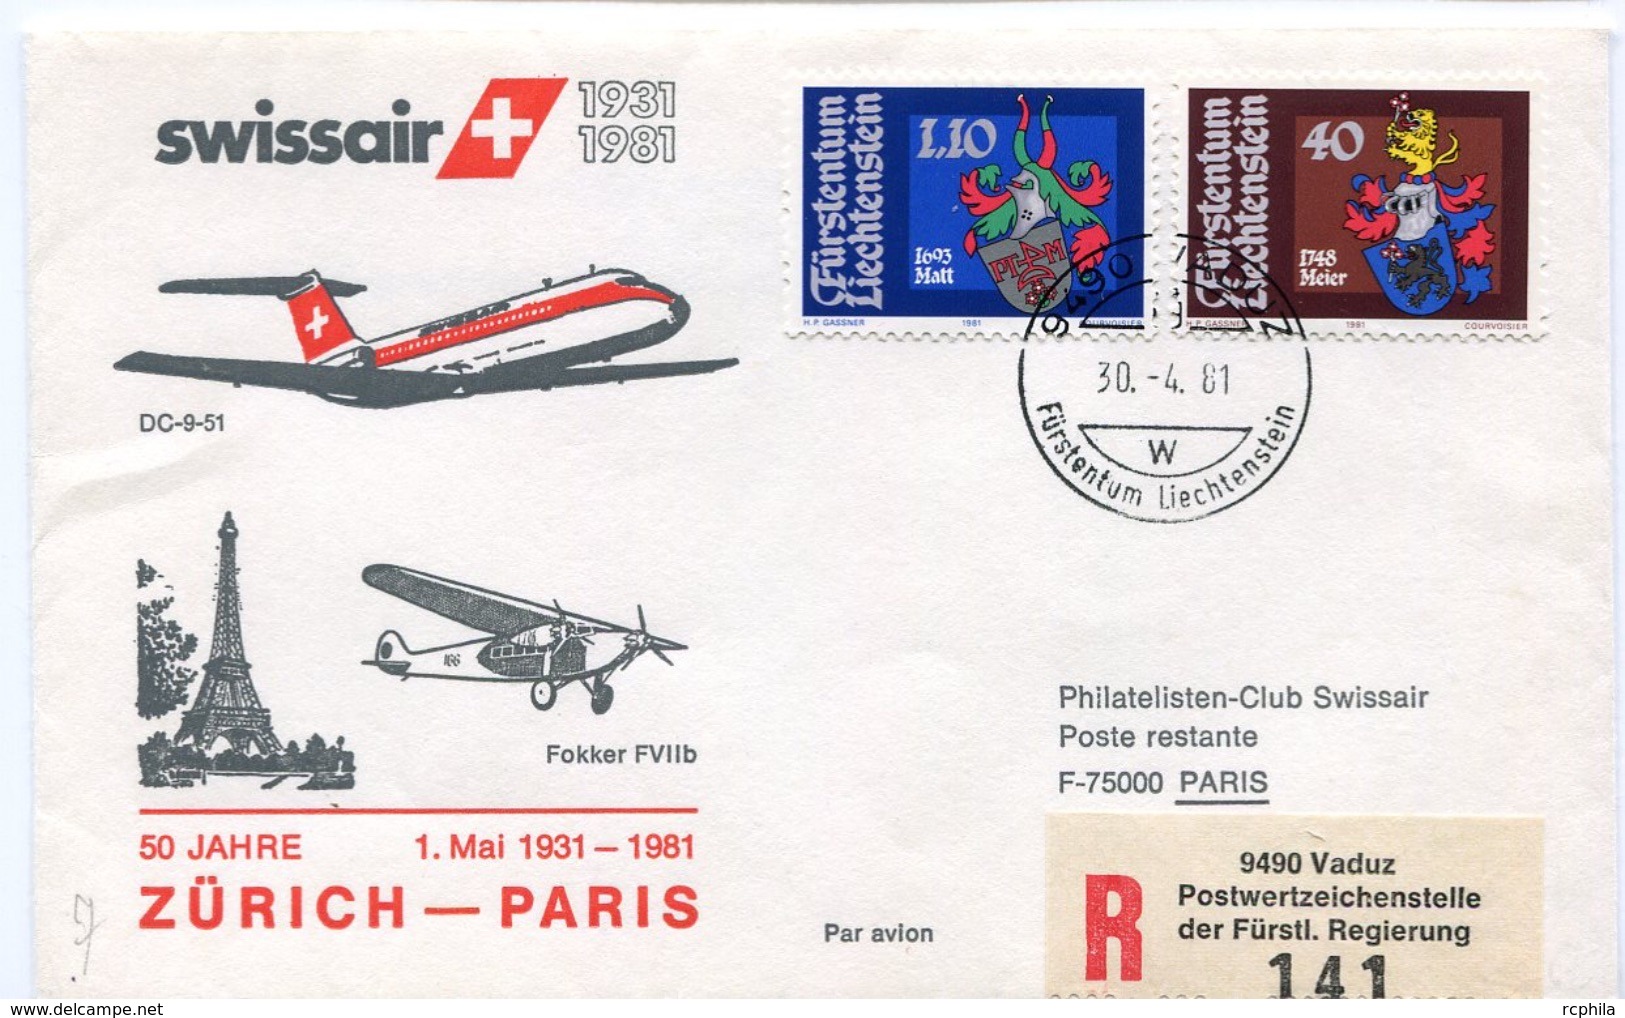 RC 6561 SUISSE SWITZERLAND 1981 1er VOL SWISSAIR ZURICH - PARIS FRANCE LIECHTENSTEIN FFC LETTRE COVER - Primi Voli